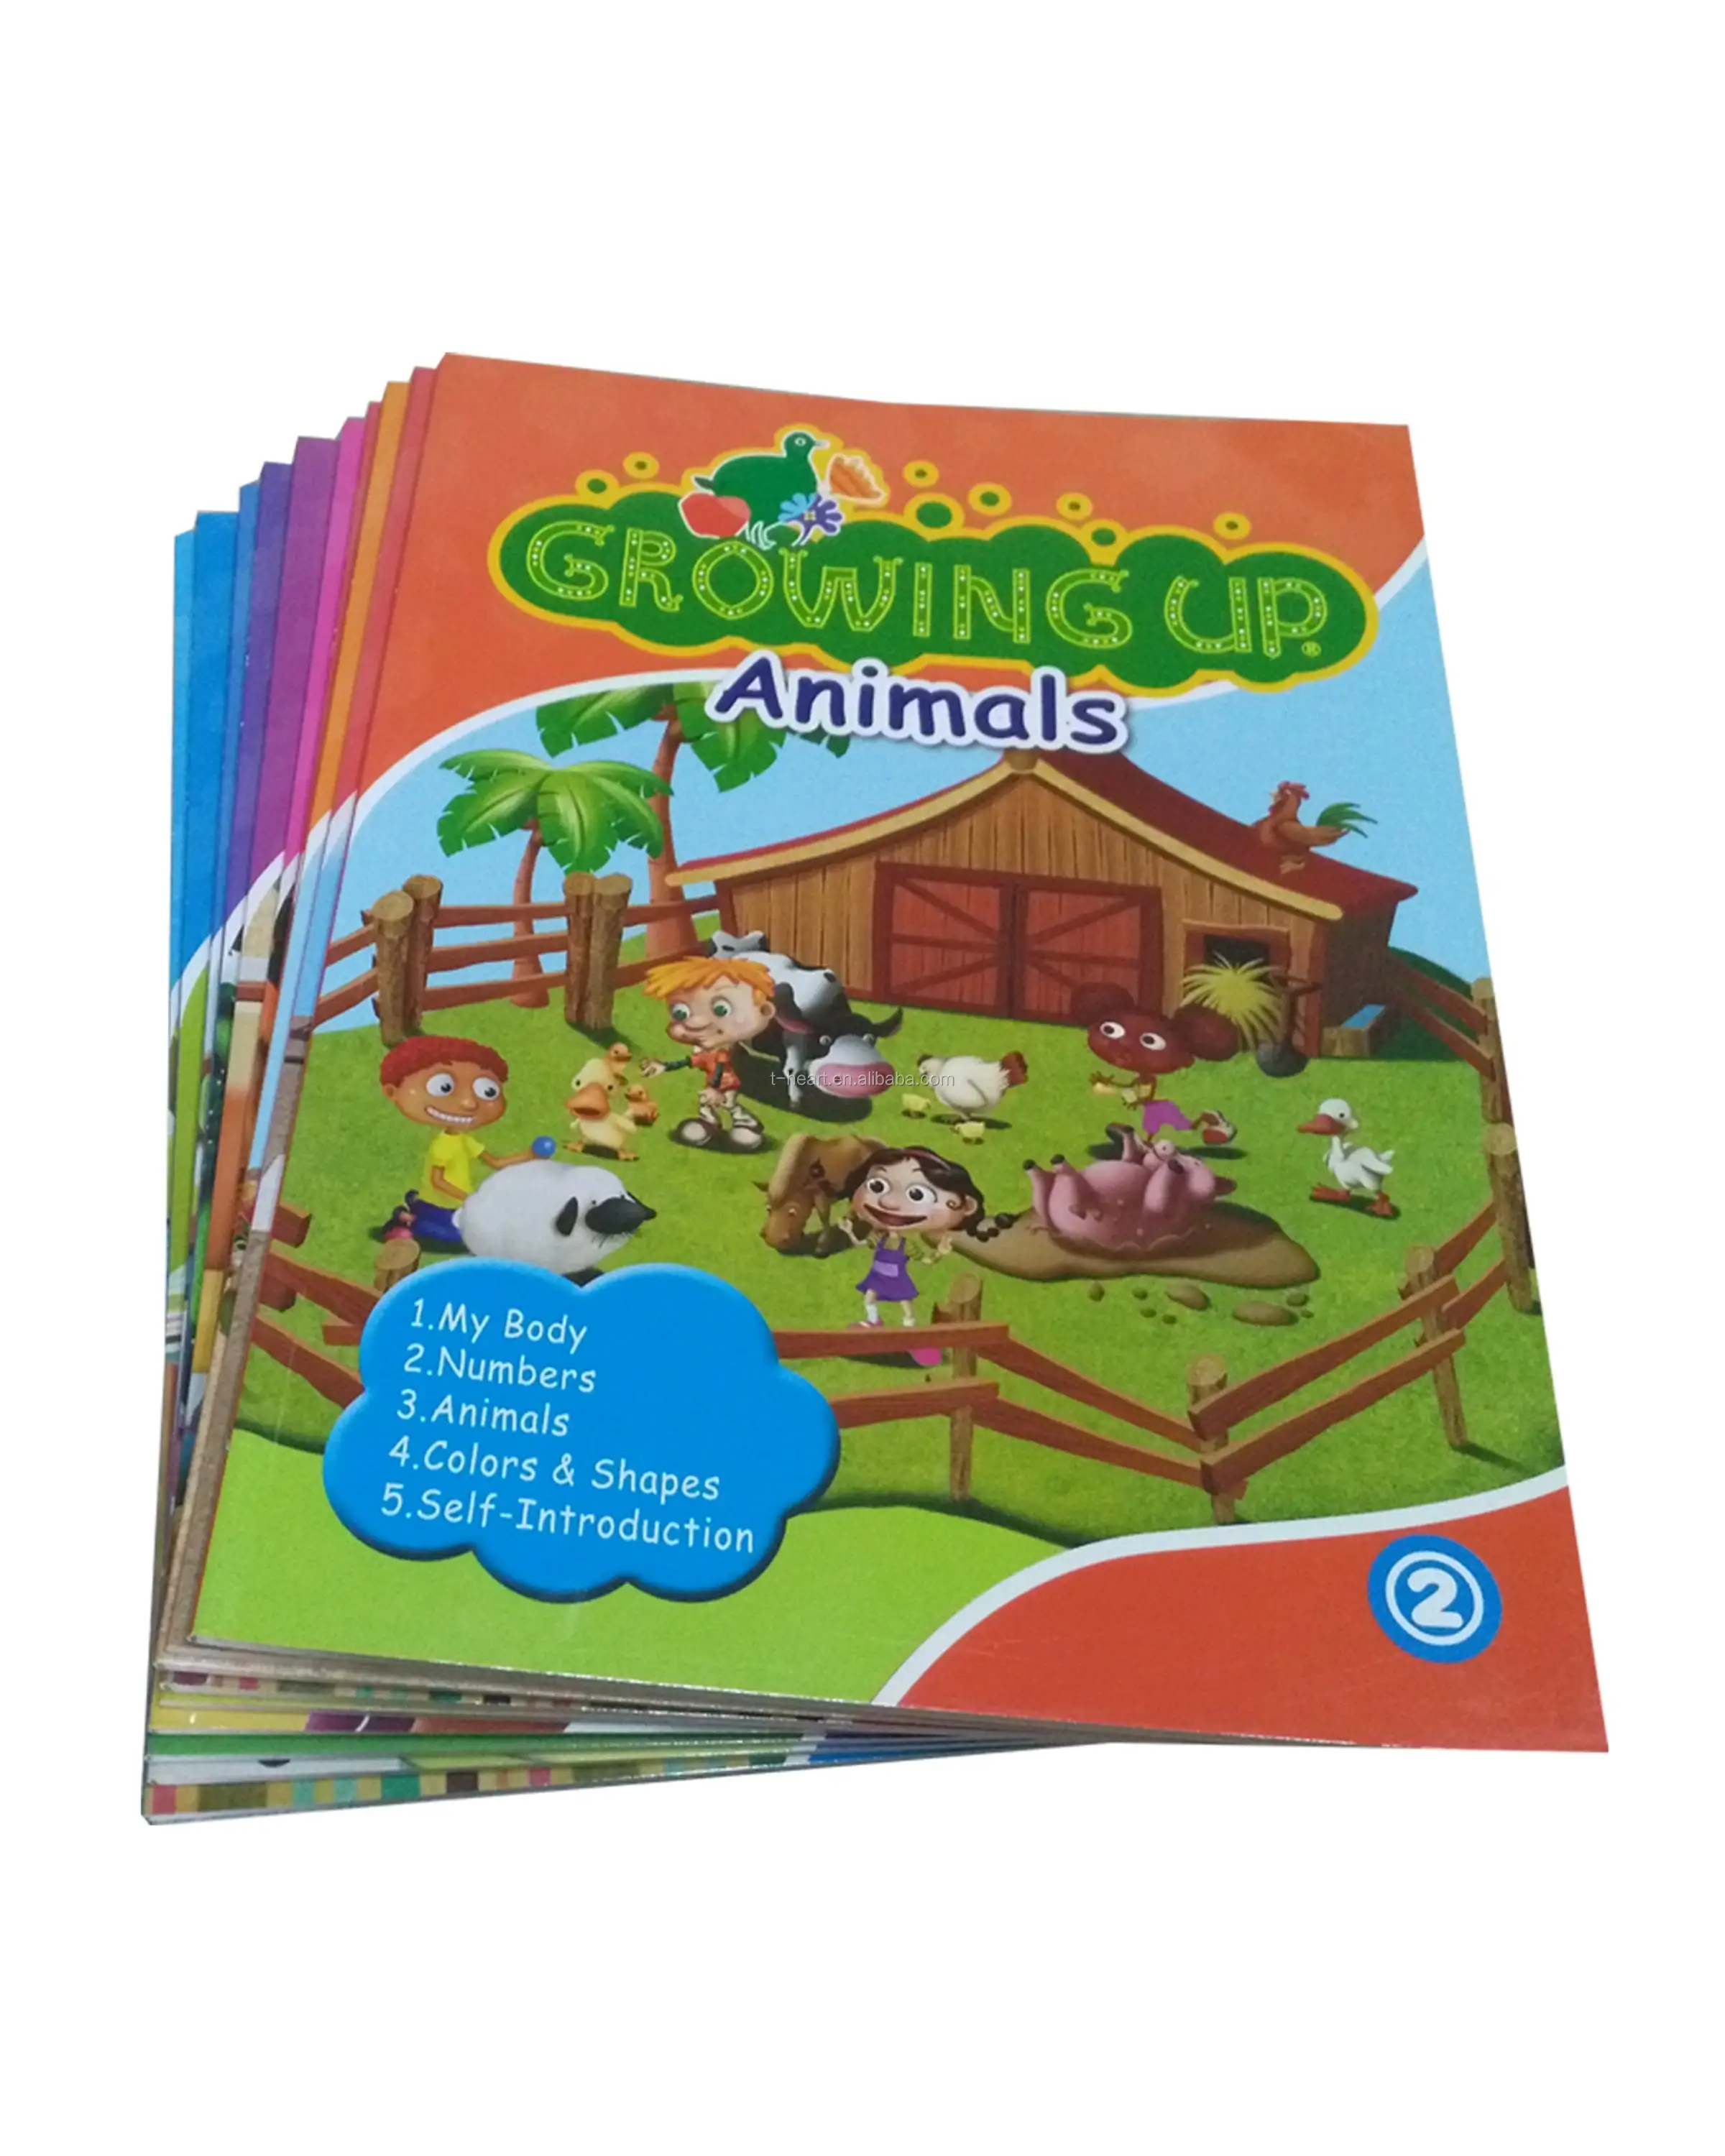 Colorful tumbuh buku untuk anak anak belajar bahasa inggris ABC dan hewan